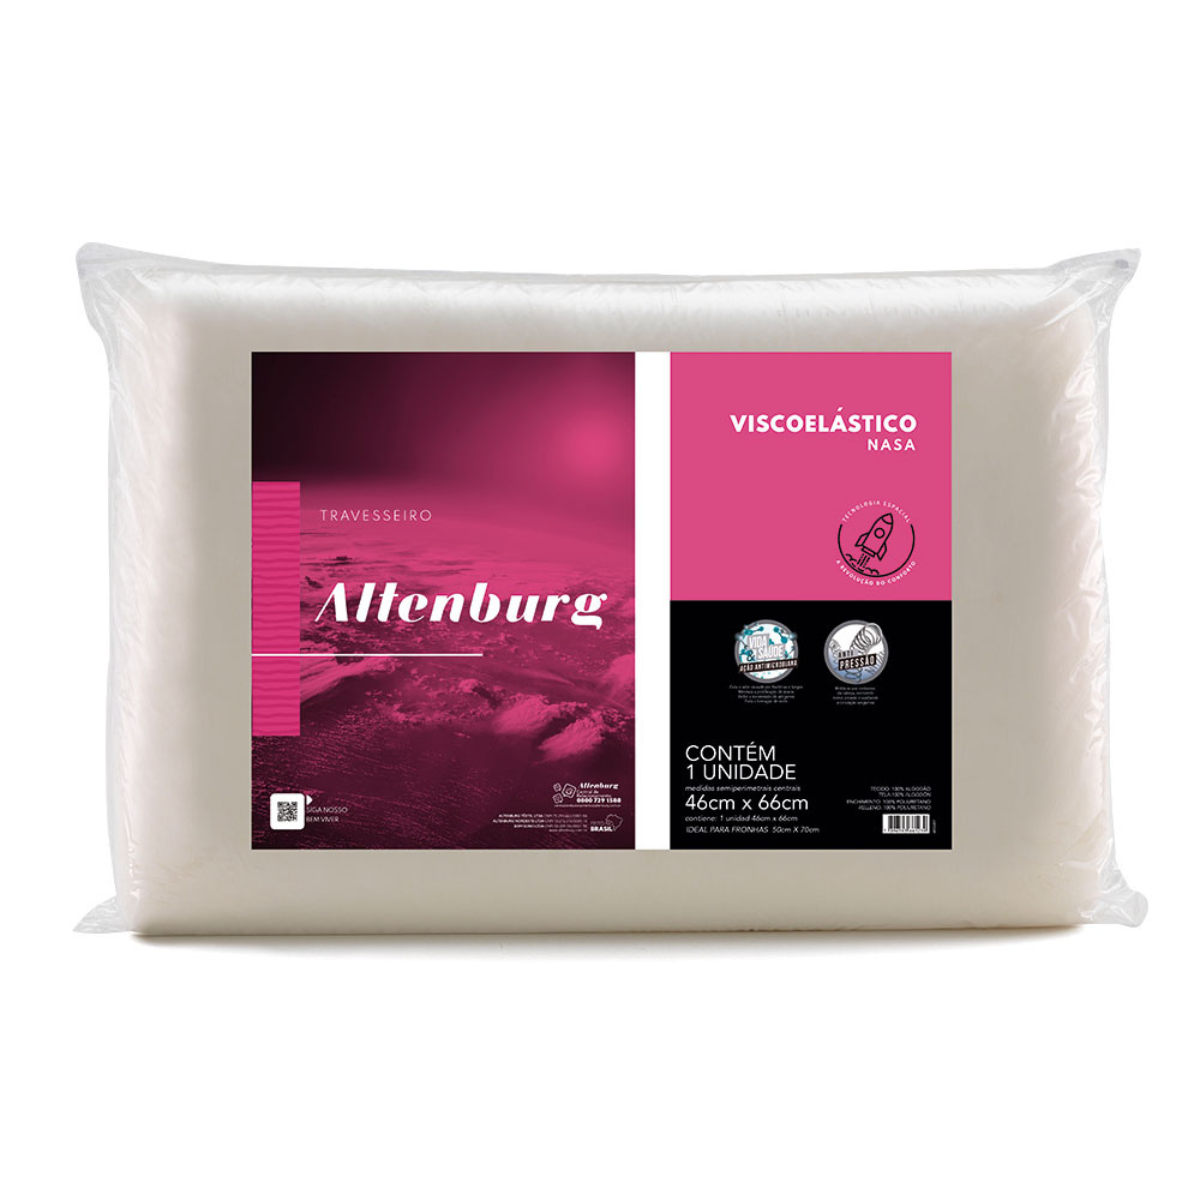 Travesseiro Altenburg Viscoelástico Nasa Marfim